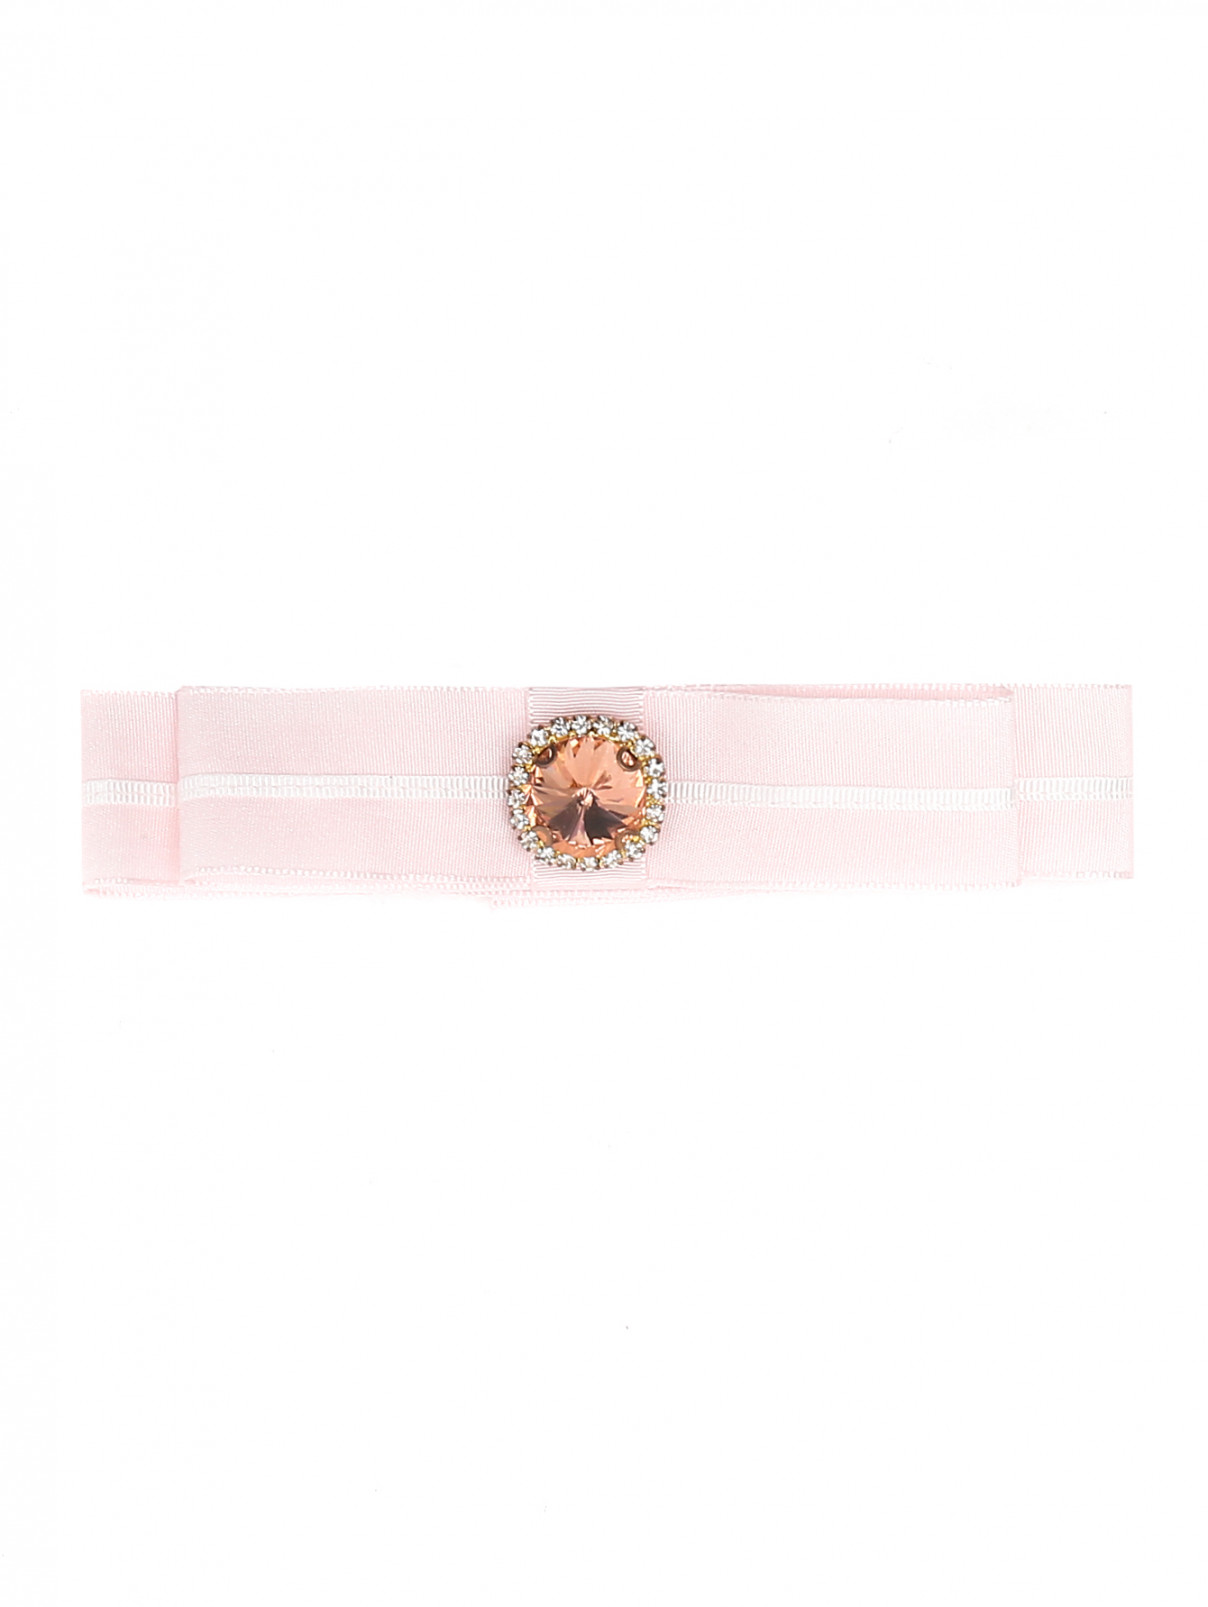 Пояс с декоративным кристаллом Aletta Couture  –  Общий вид  – Цвет:  Розовый